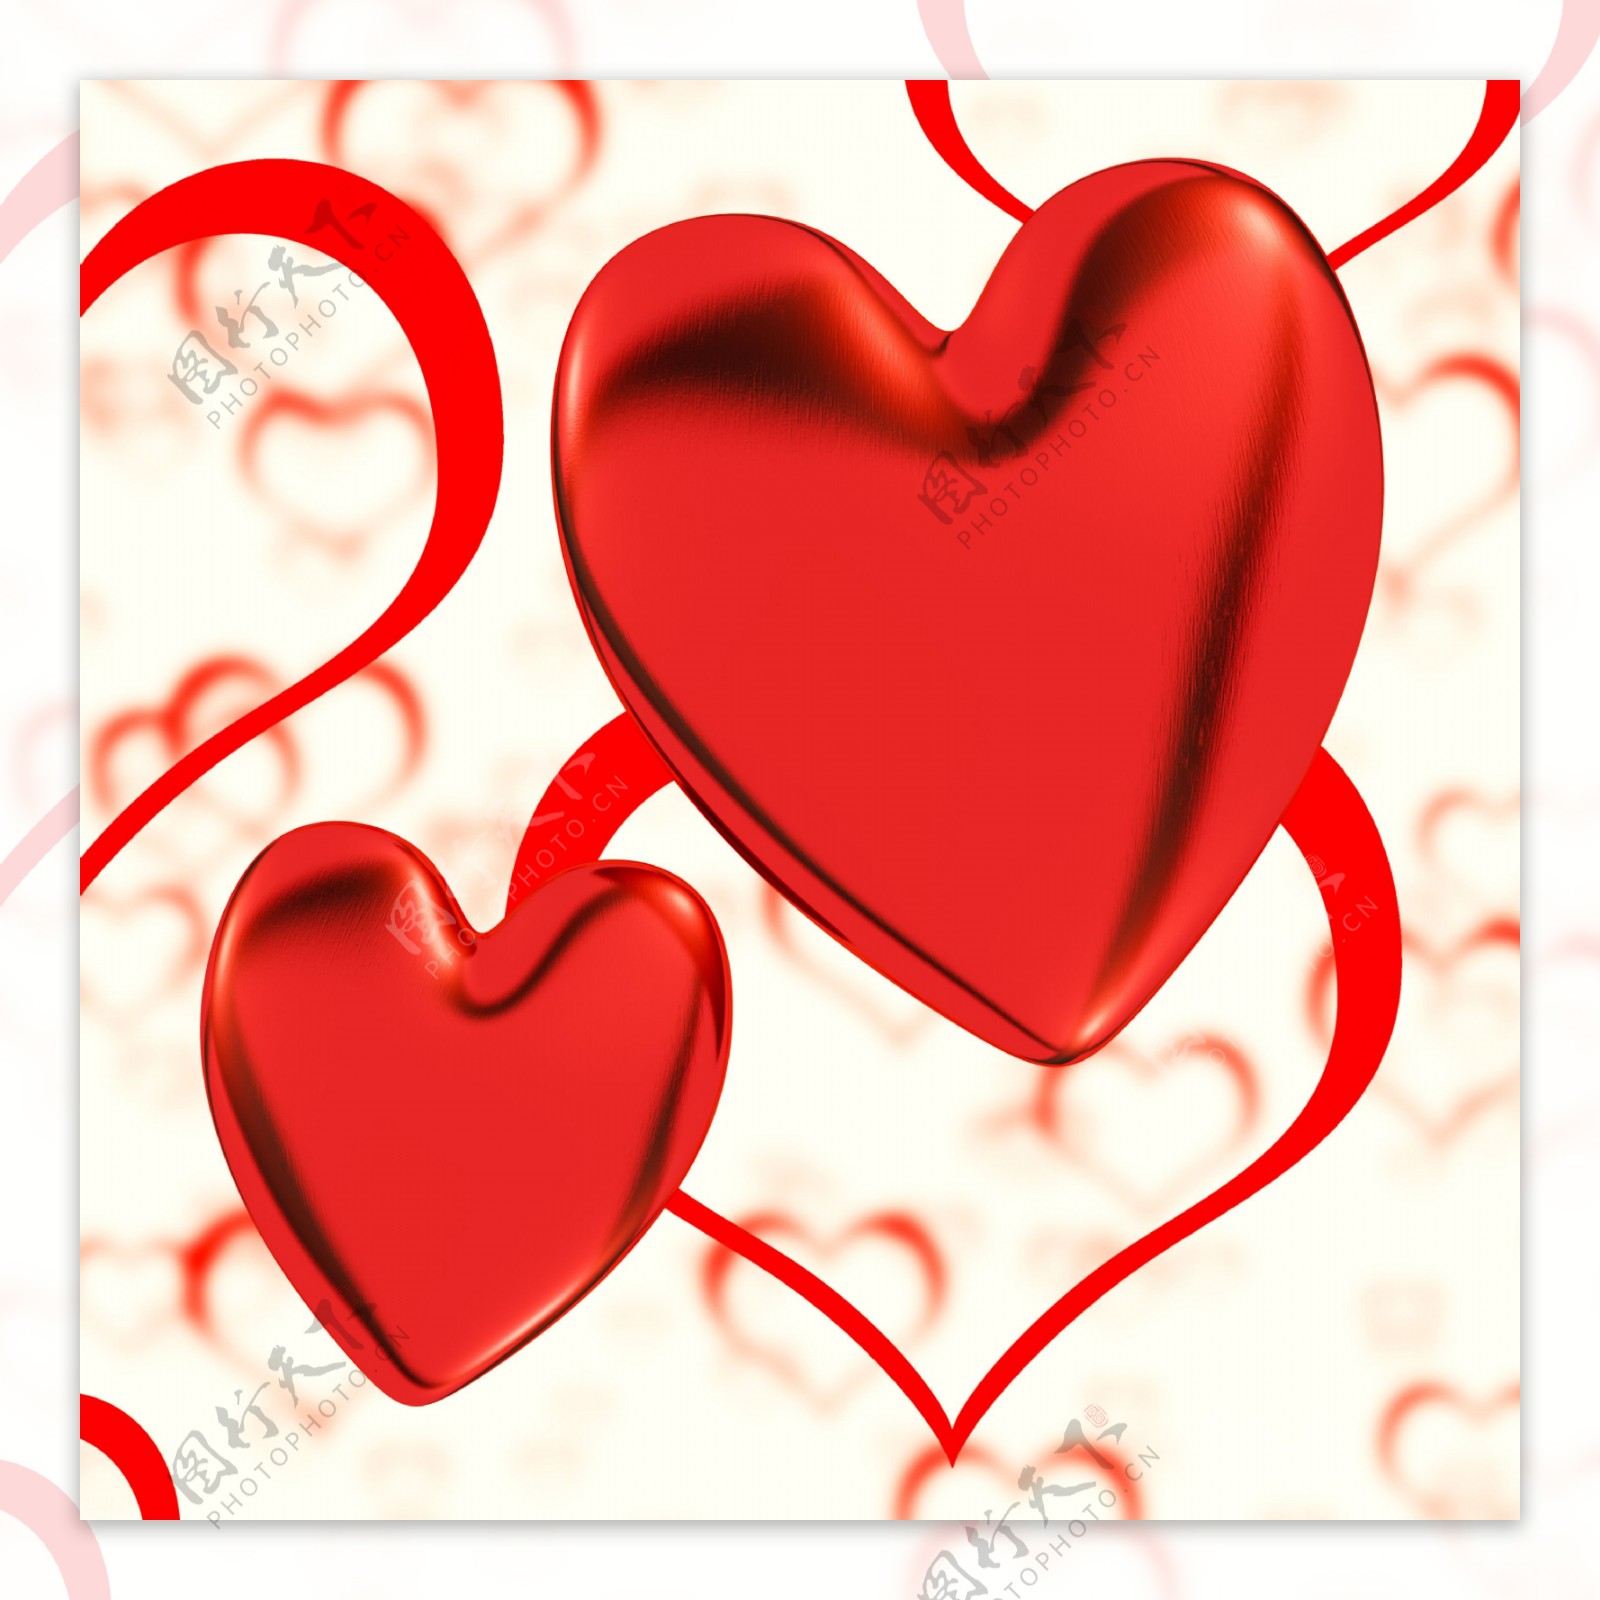 红色的心在心脏的背景显示的浪漫的爱情和浪漫的感觉